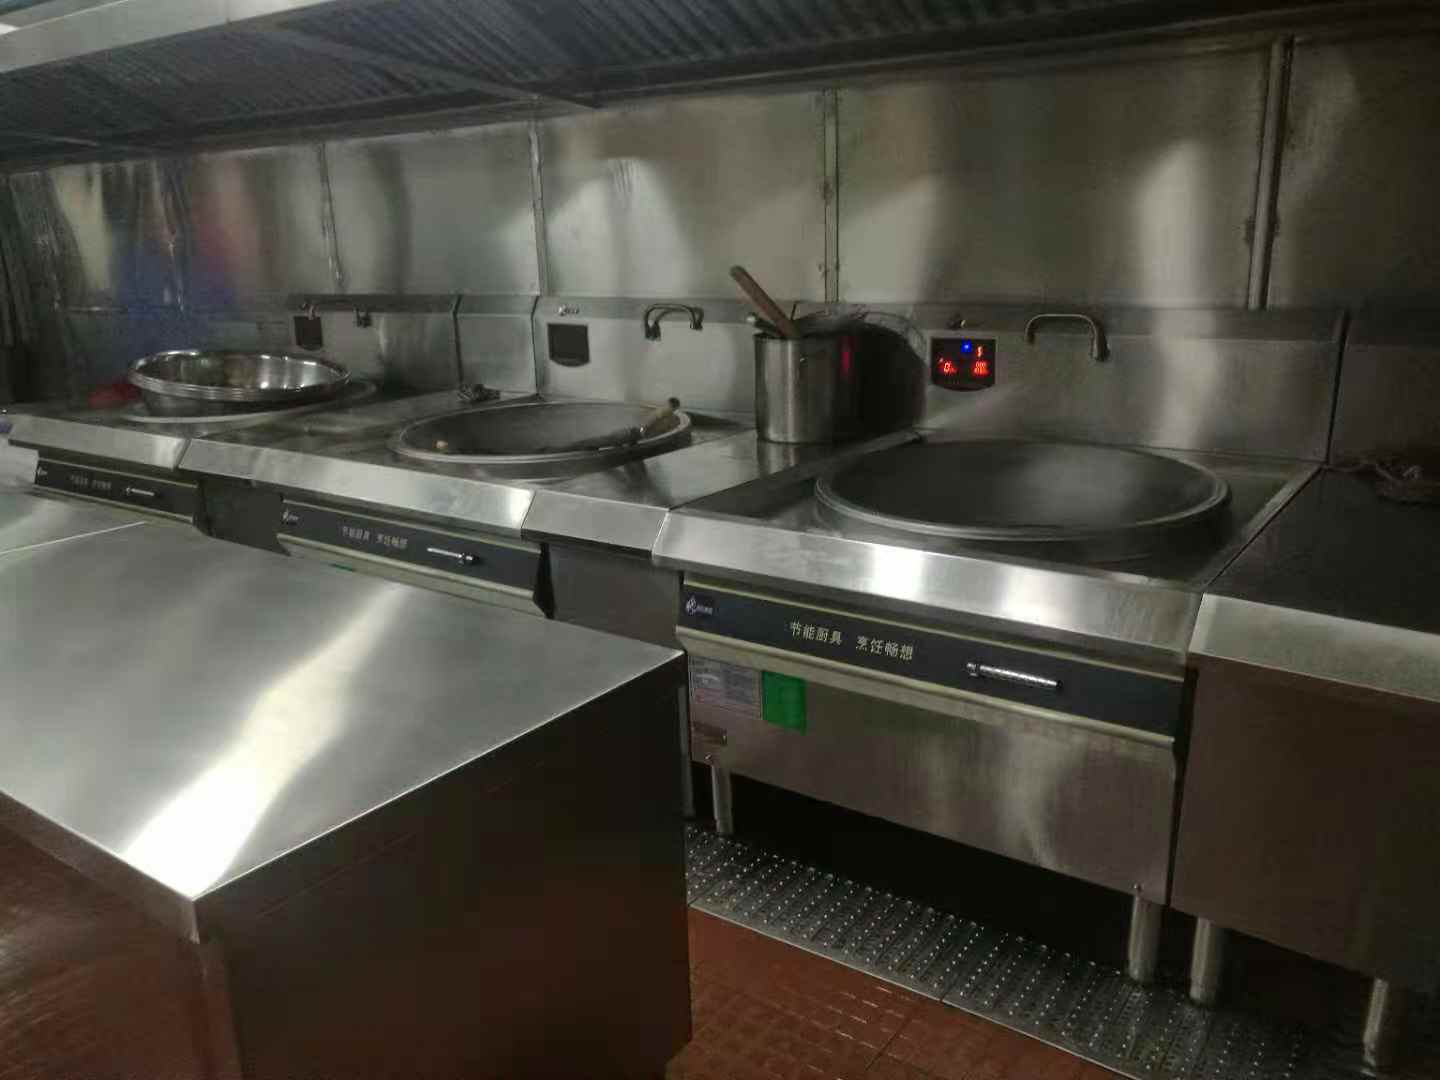 广州雍隆厨房设备有限公司承包整套酒店学校食堂商用厨房设备安装